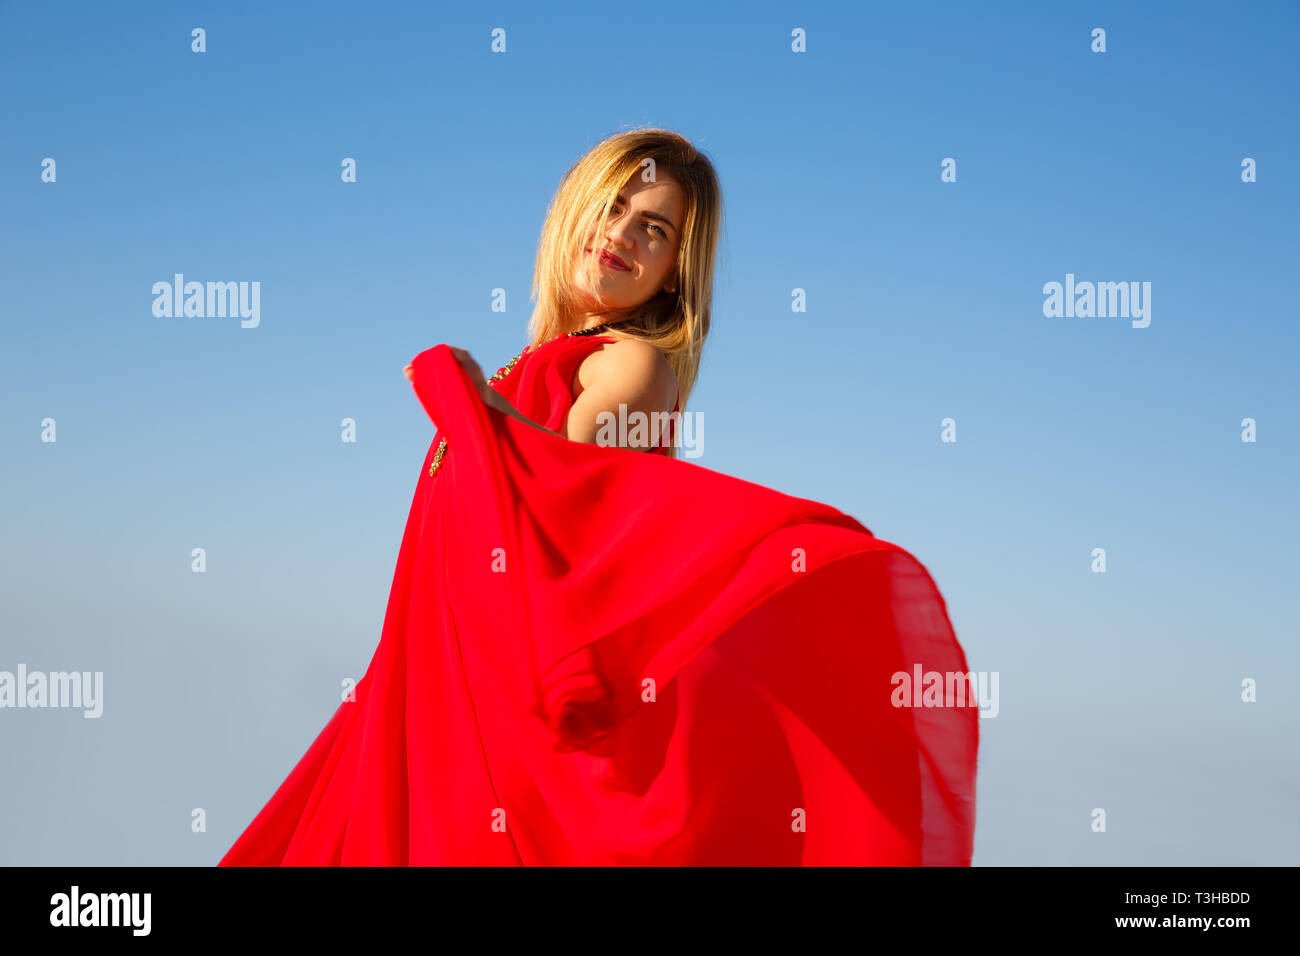 La donna in abito rosso con collana chiudere l'immagine. Foto Stock